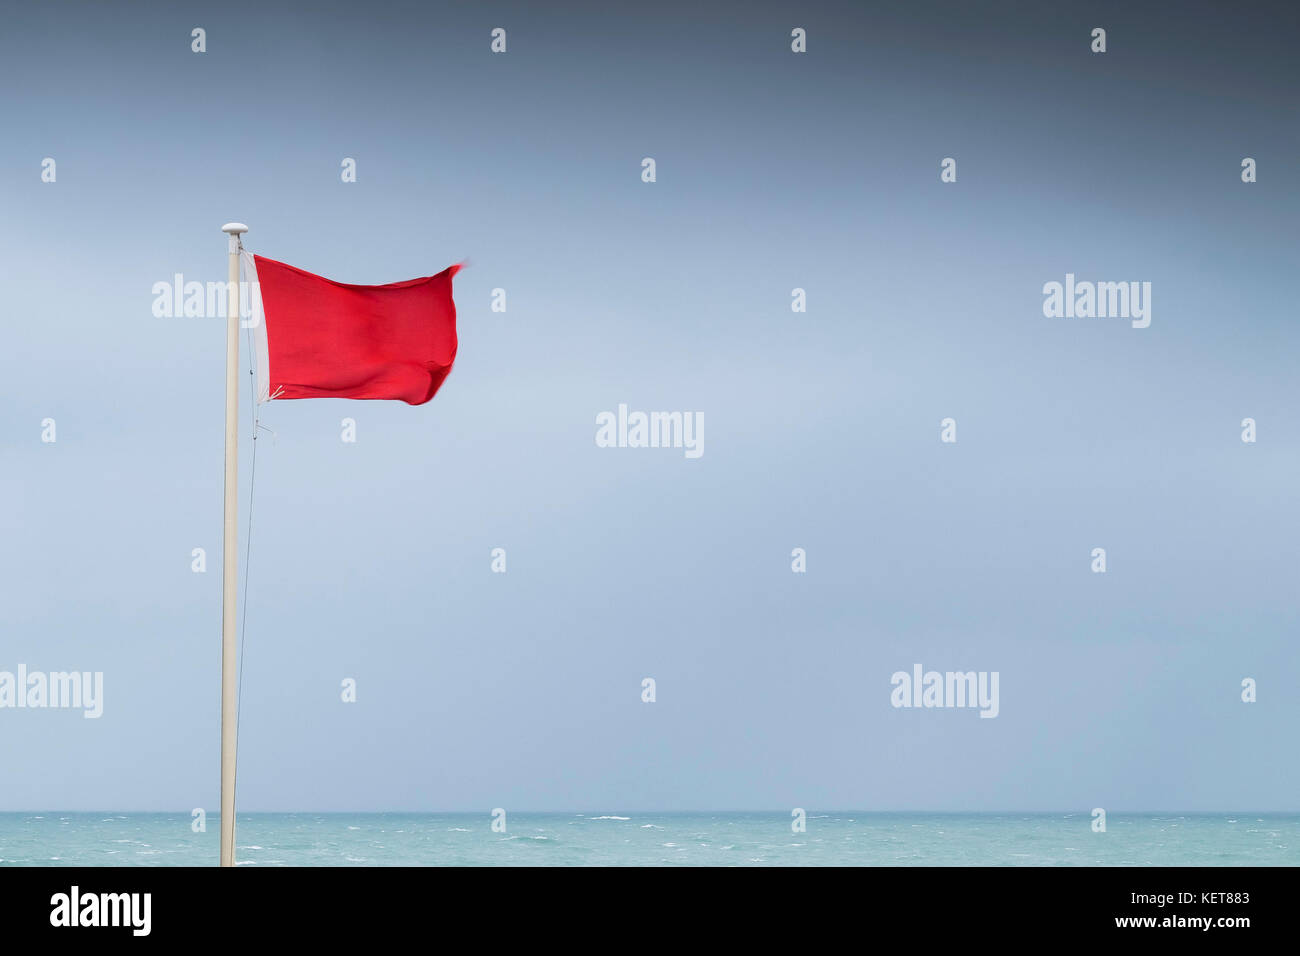 Bandiera rossa - una spia rossa bandiera volare con vento forte a Fistral Beach Newquay Cornwall. Foto Stock